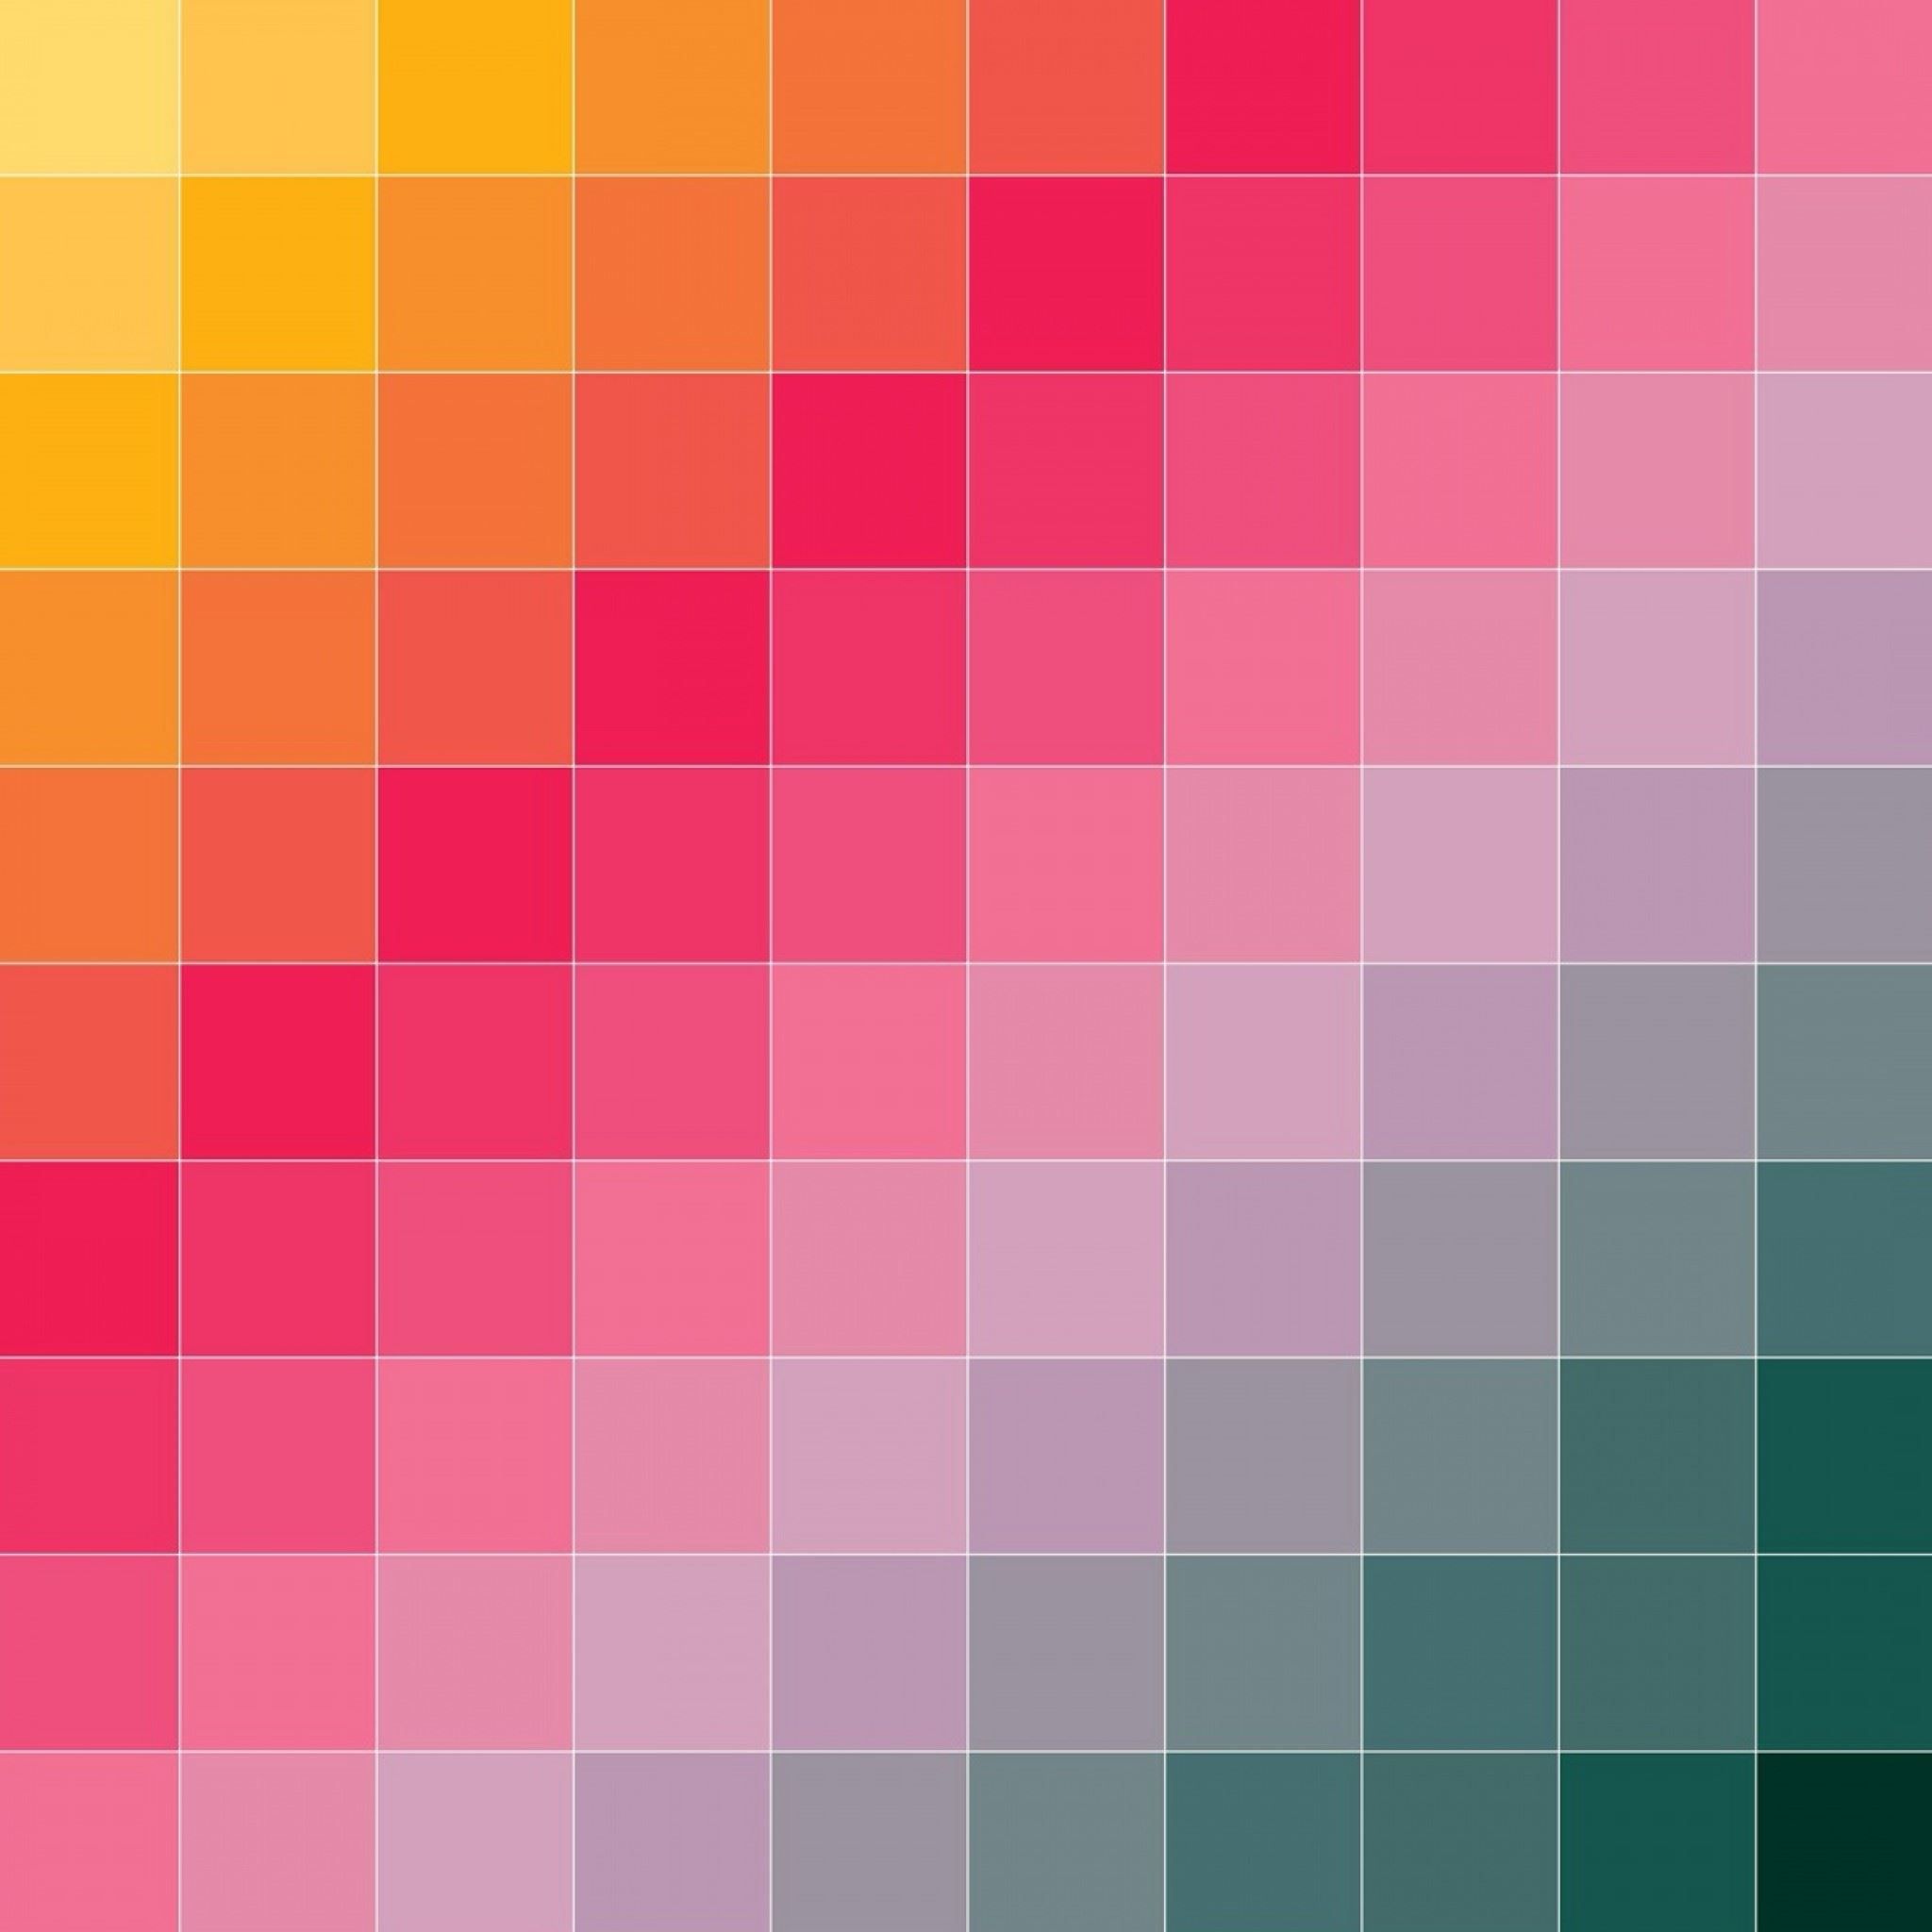 Flip Color Grid iPad Air Wallpaper Free Download